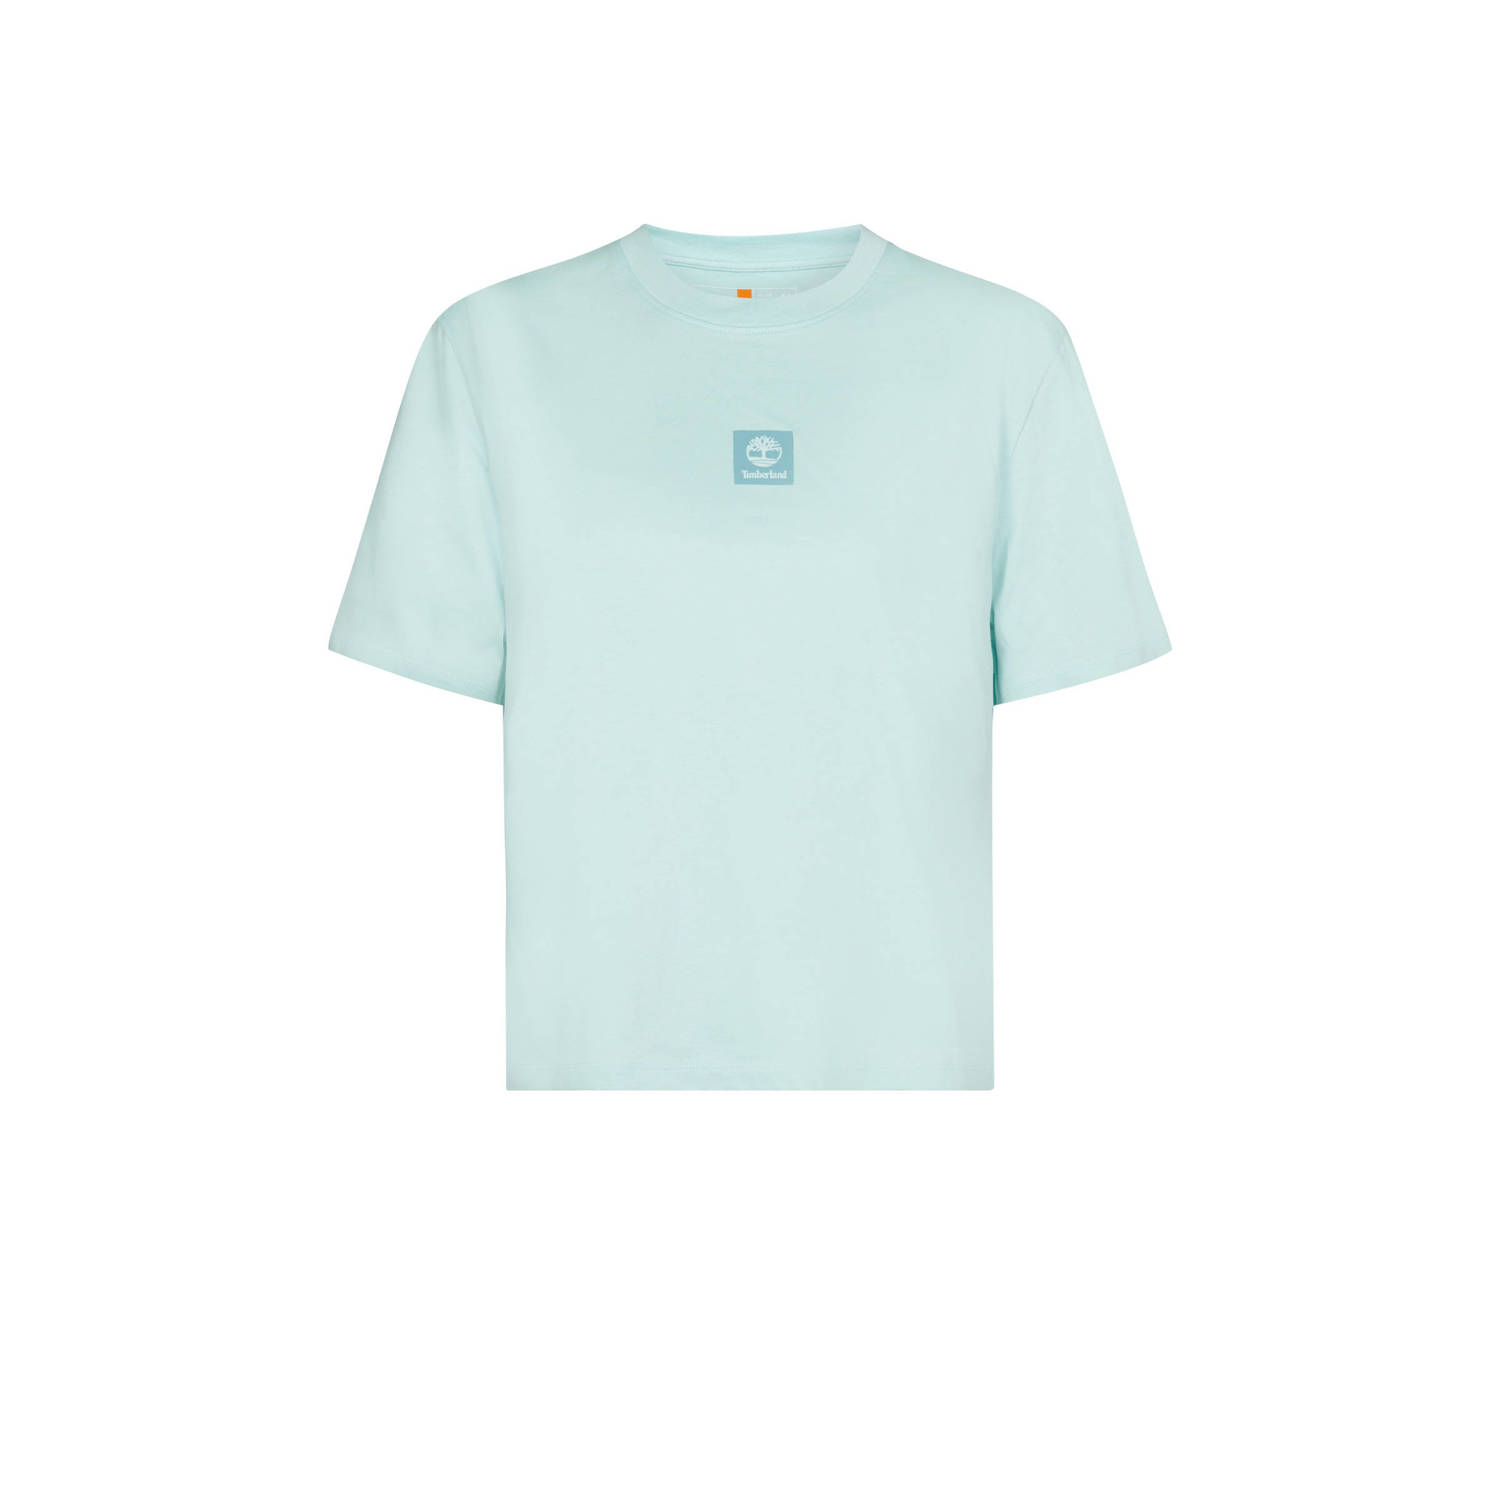 Timberland T-shirt met logo mintgroen